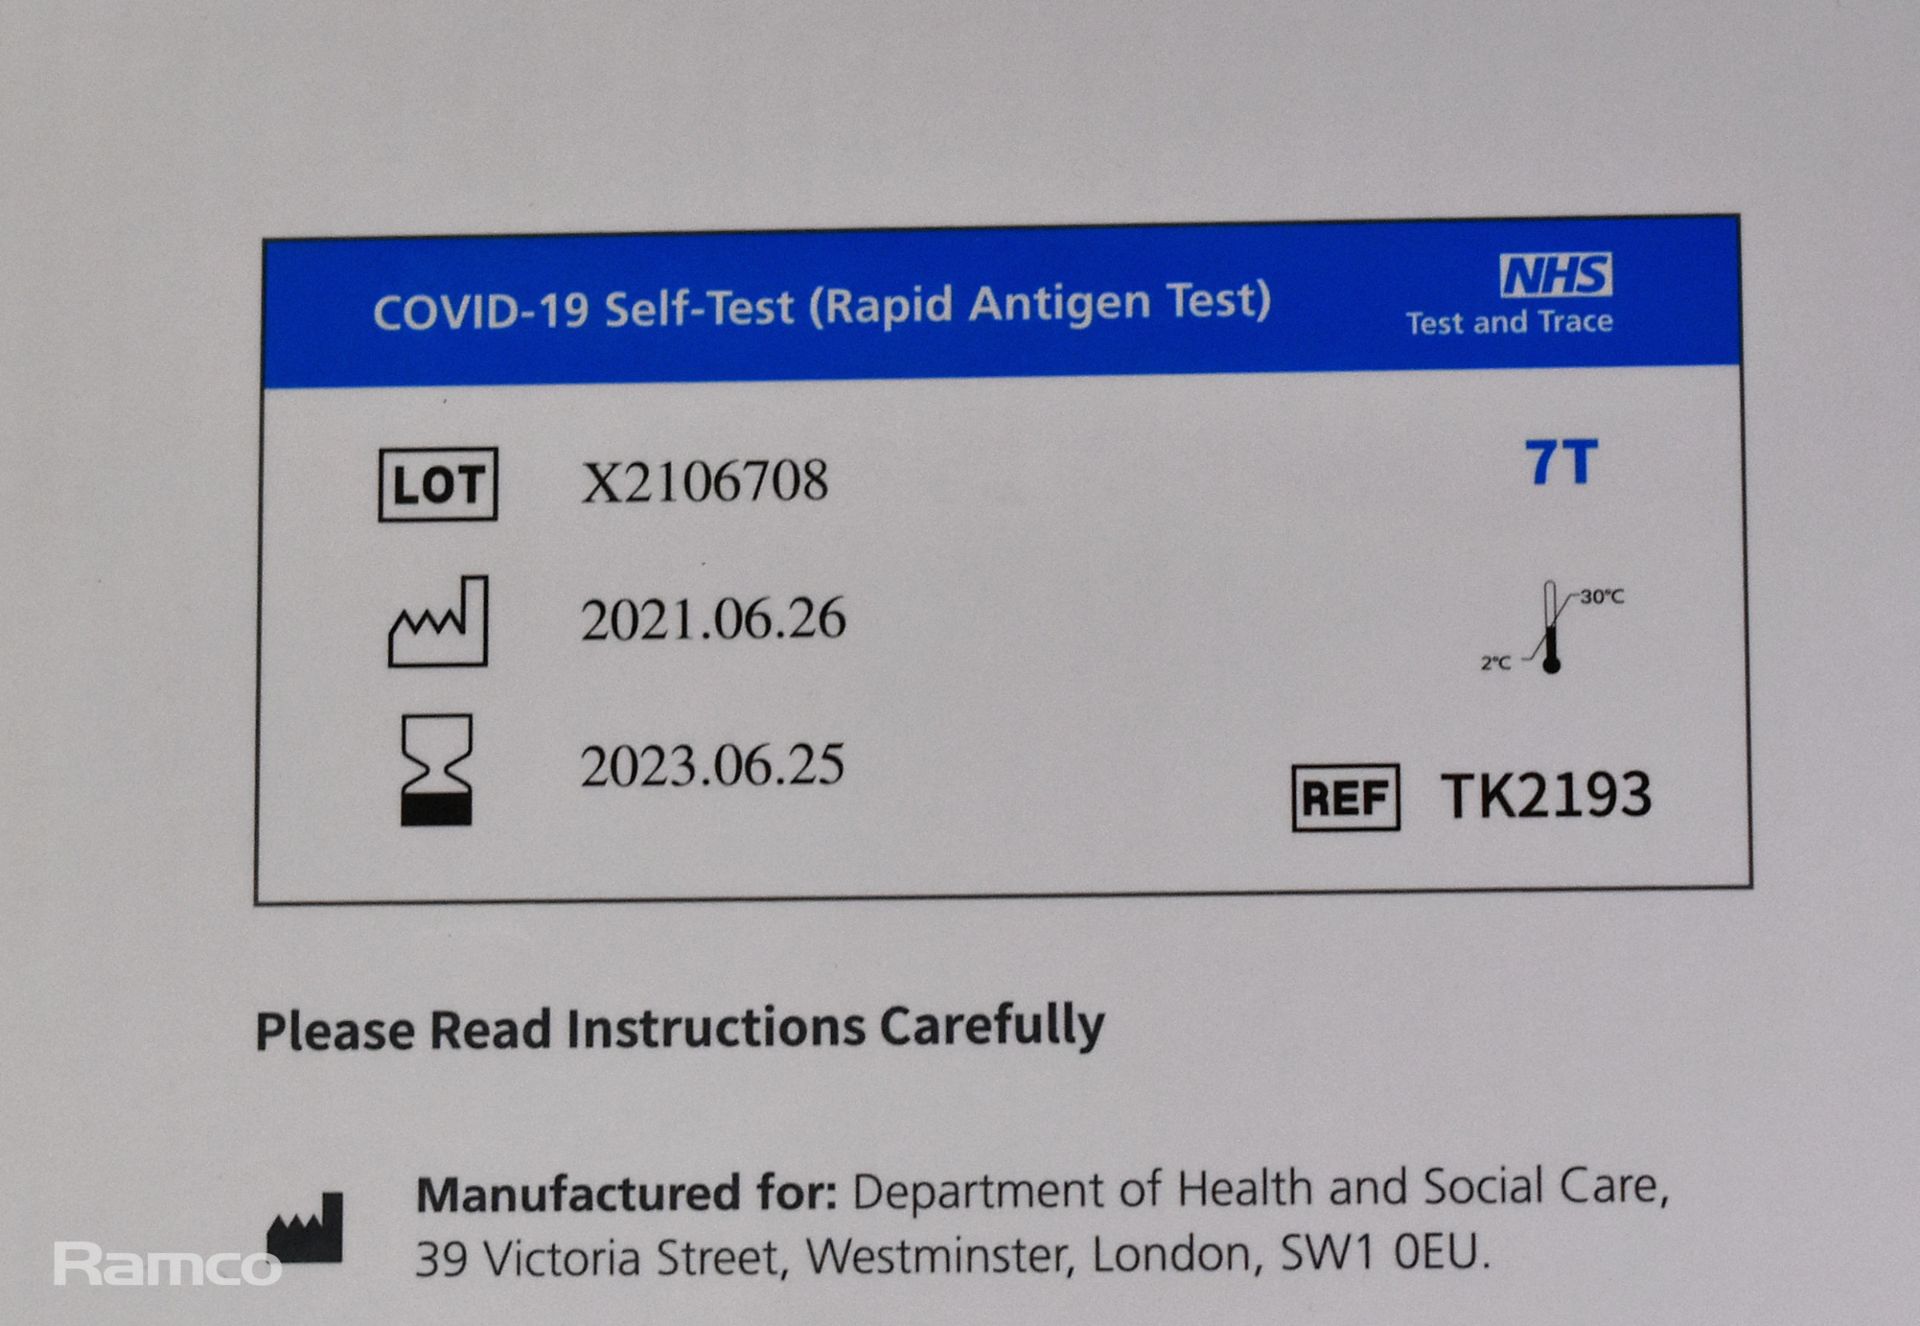 Xiamen Covid-19 self test (rapid antigen test) - 392 tests per box - Image 3 of 3